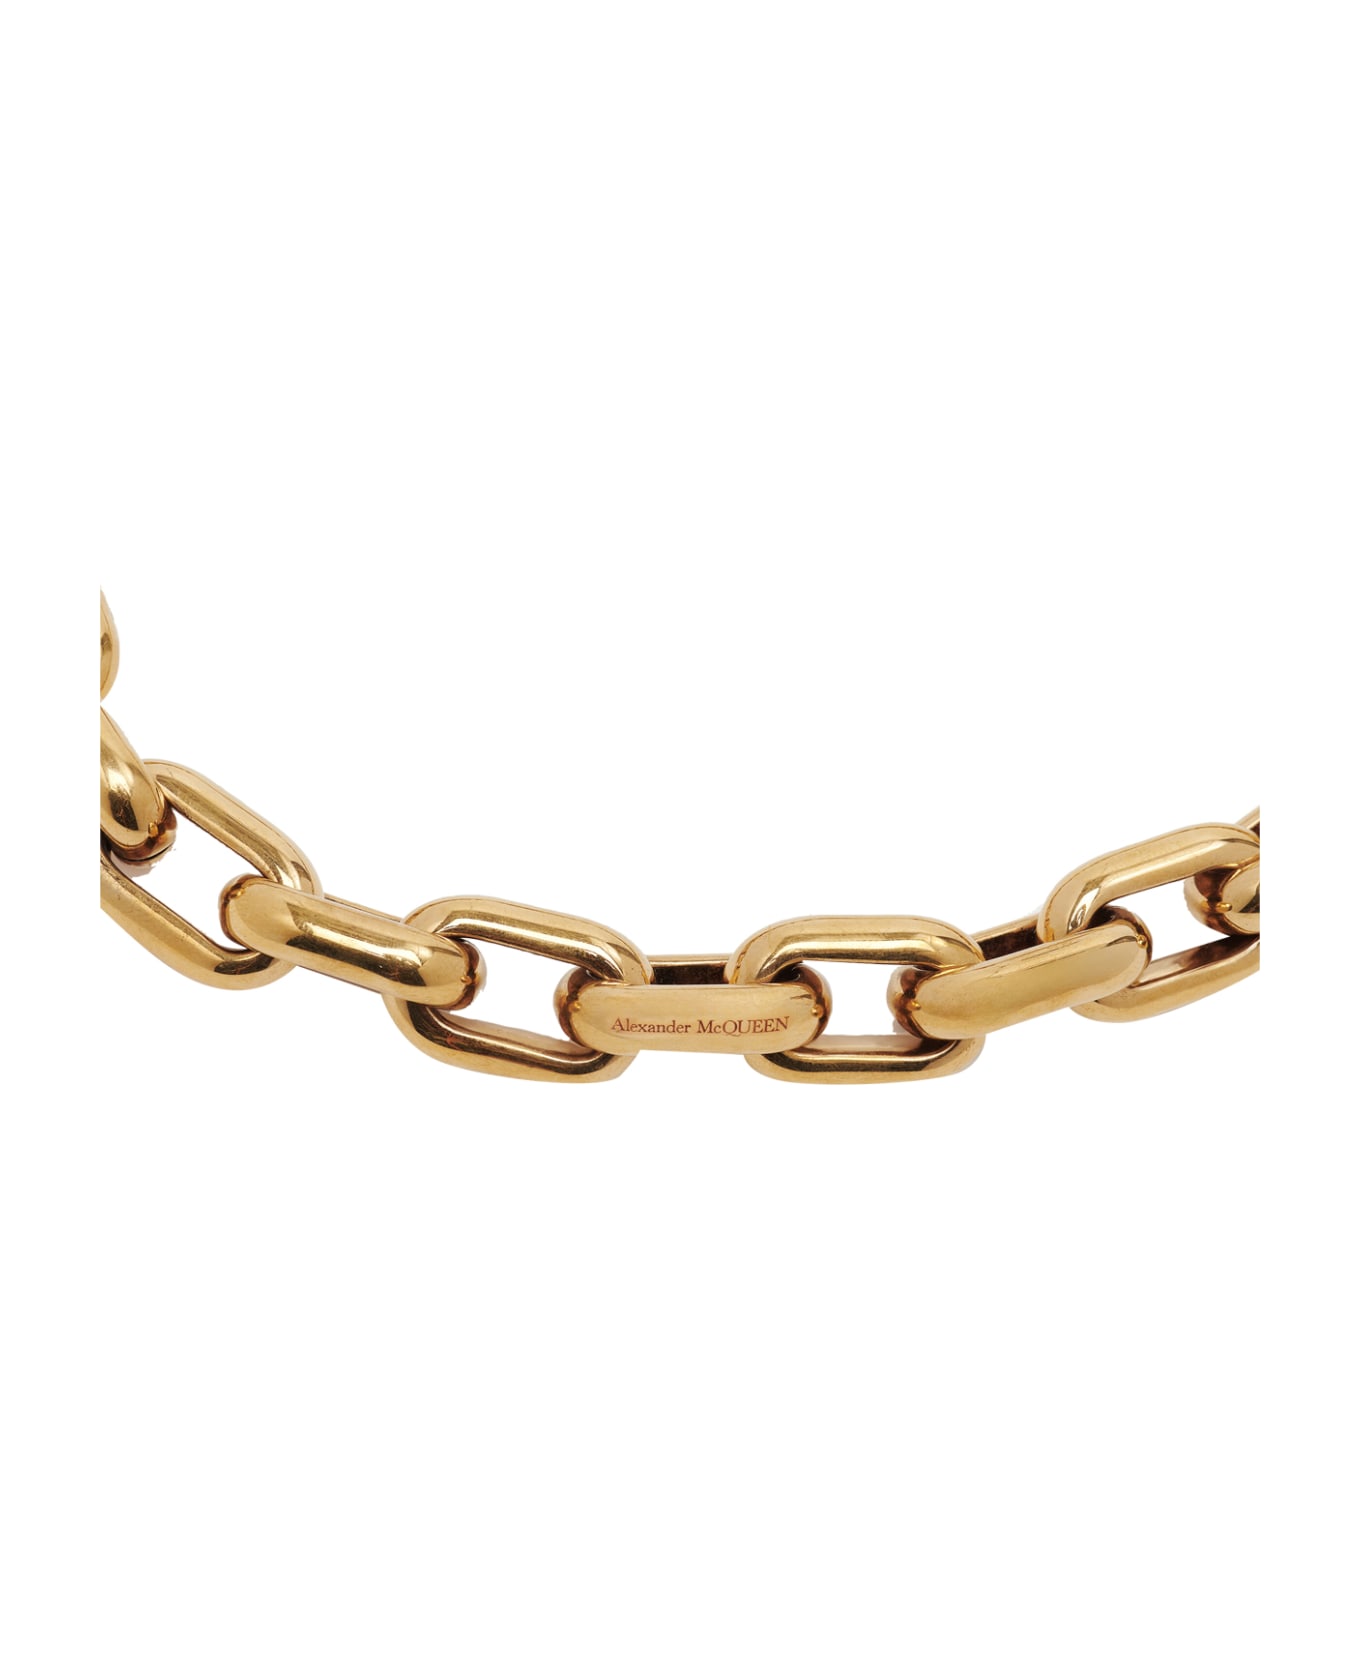 Alexander McQueen Peak Chain Necklace - Golden